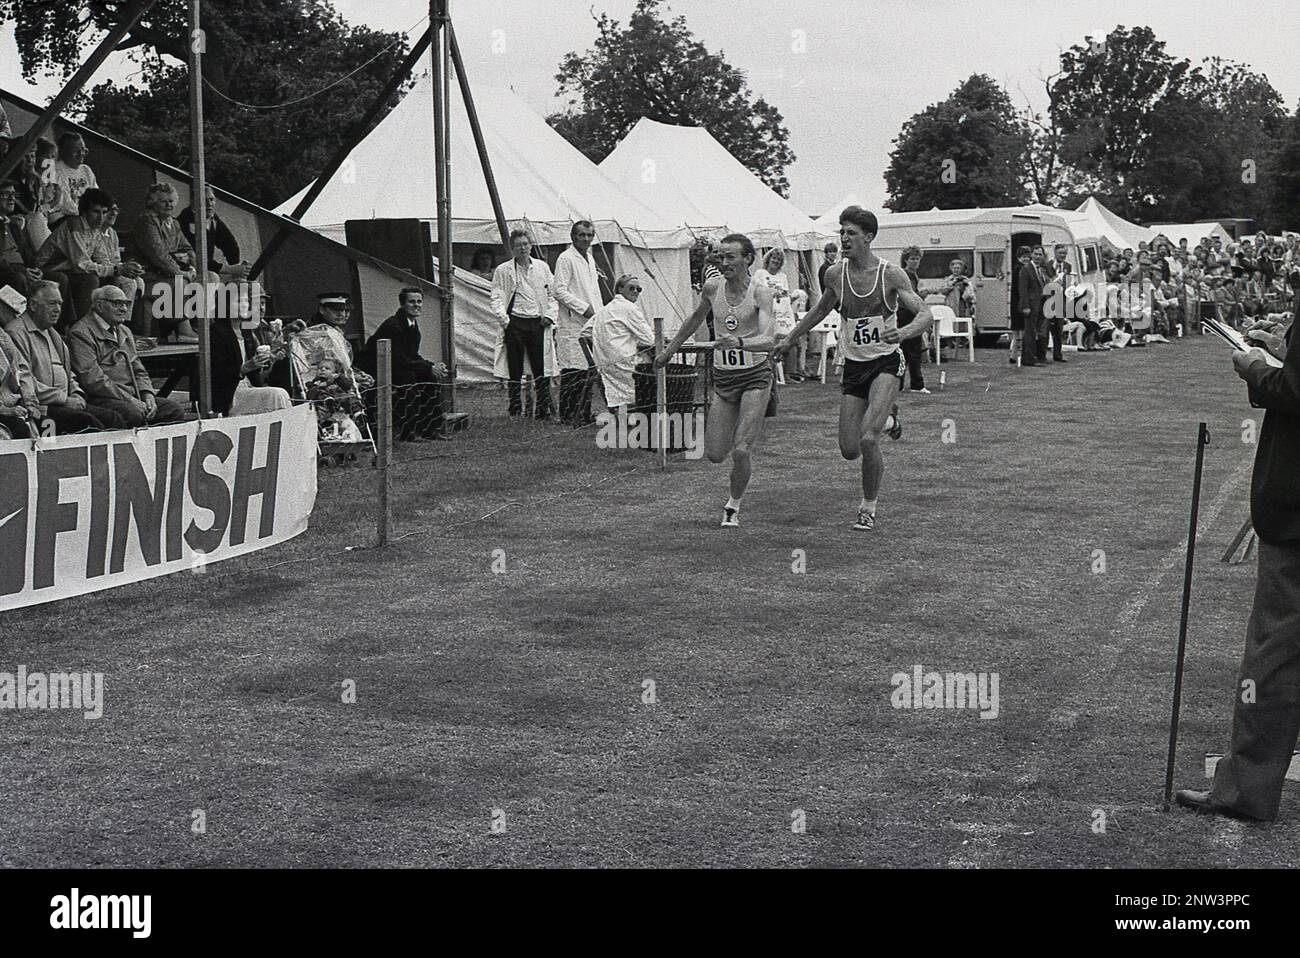 1988, historisches, nahes Ziel am Ende eines Park-Running-Rennens, bei dem zwei männliche Läufer um die Linie kämpfen, England, Großbritannien. Stockfoto